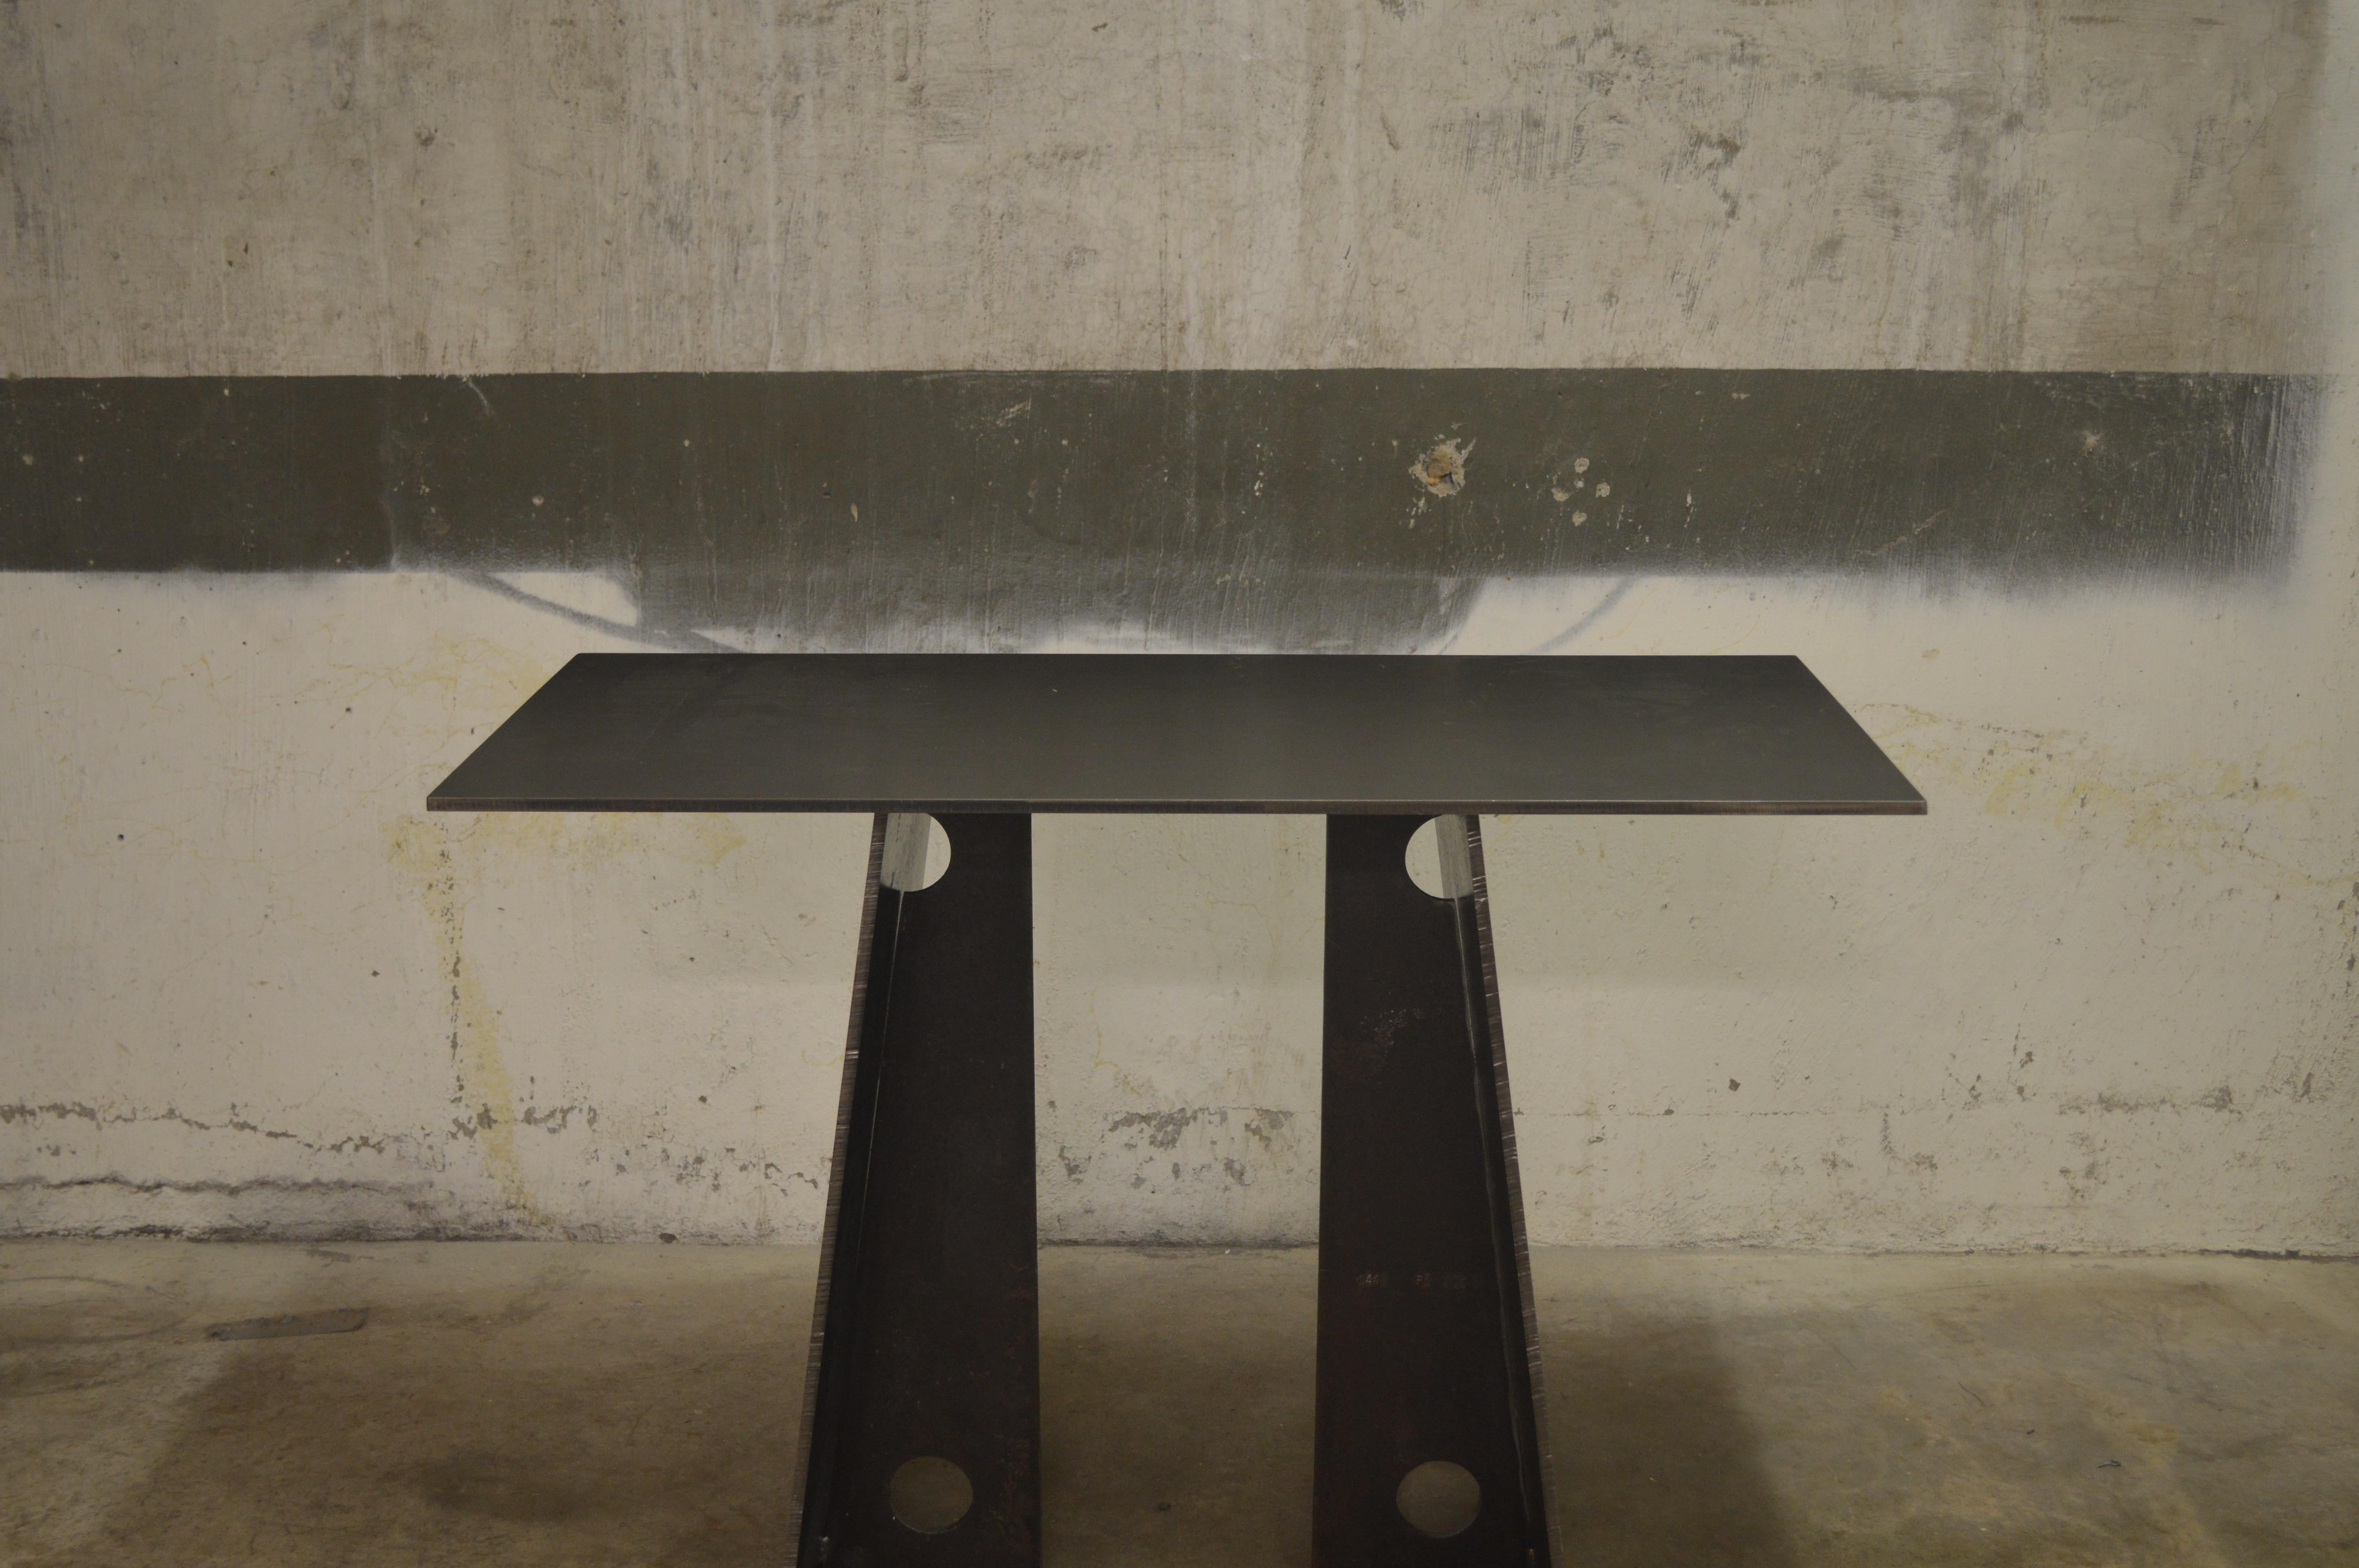 Die Bridge-Konsole, ein Originalentwurf, ist eine moderne, minimalistische Konsole aus geschwärztem Stahl, die von Scott Gordon in Vermont entworfen und hergestellt wird. Hier abgebildet mit verwittertem 3/8